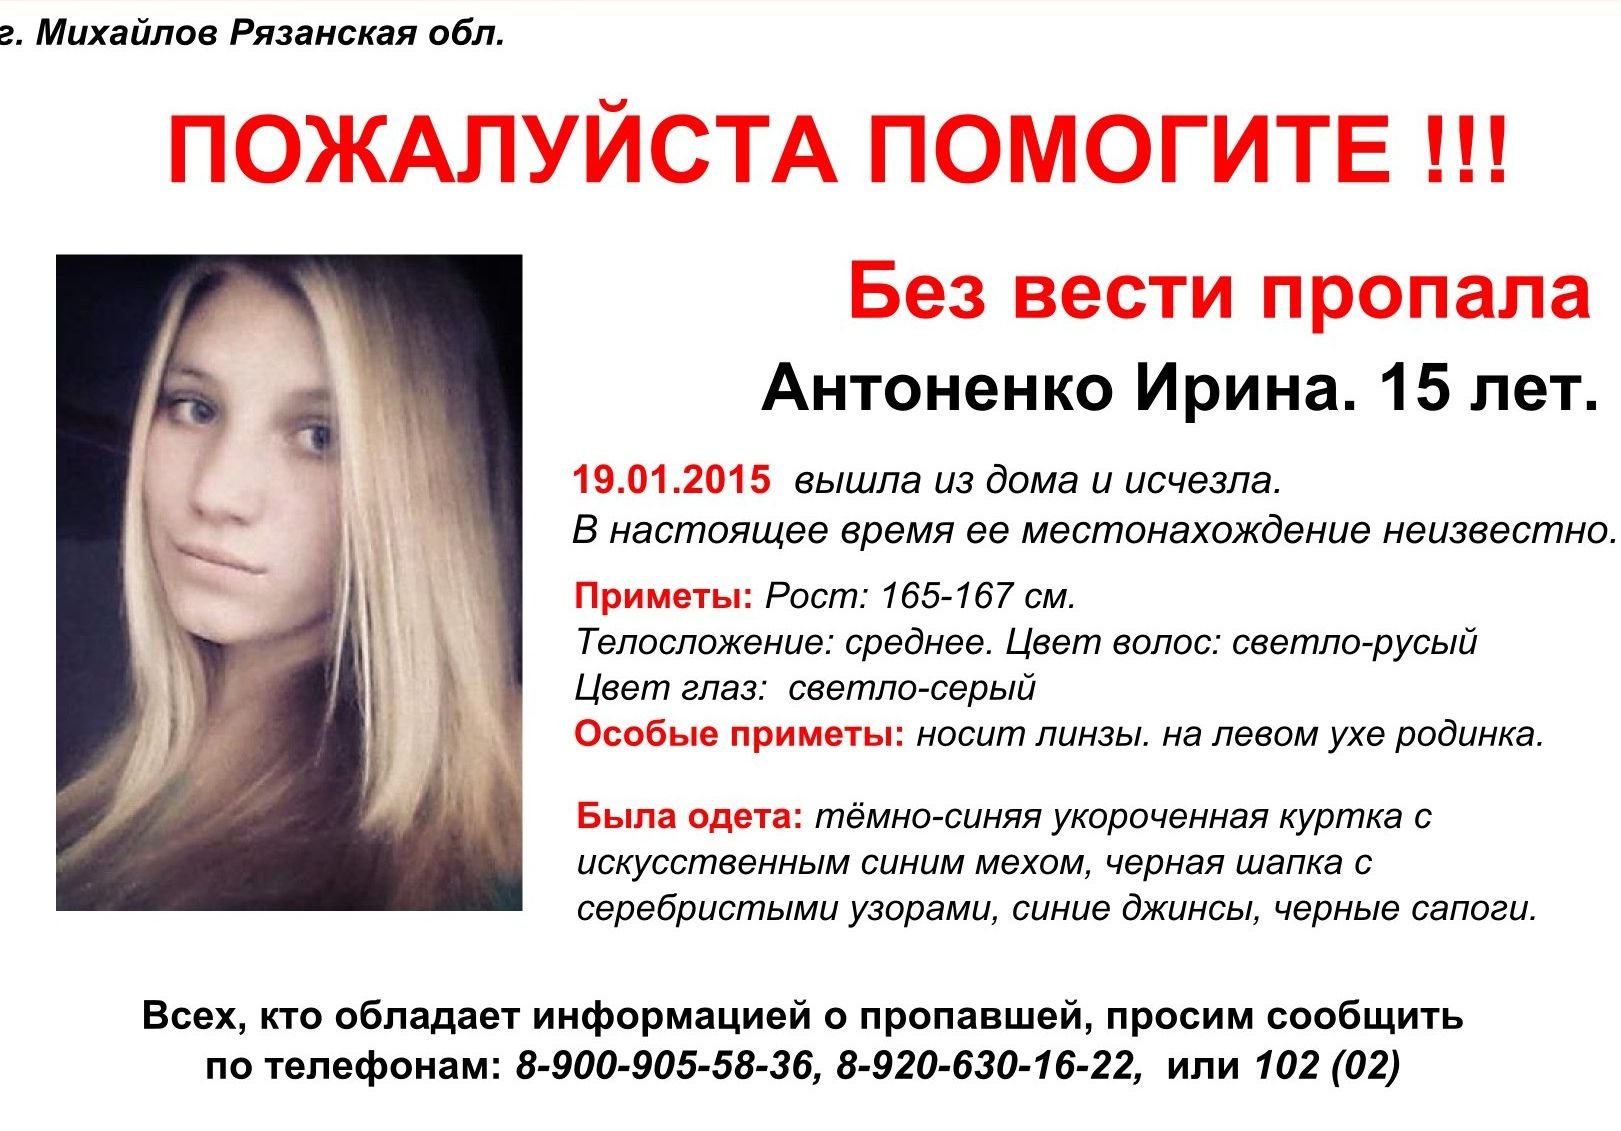 Нашлась пропавшая в Михайлове 15-летняя девушка